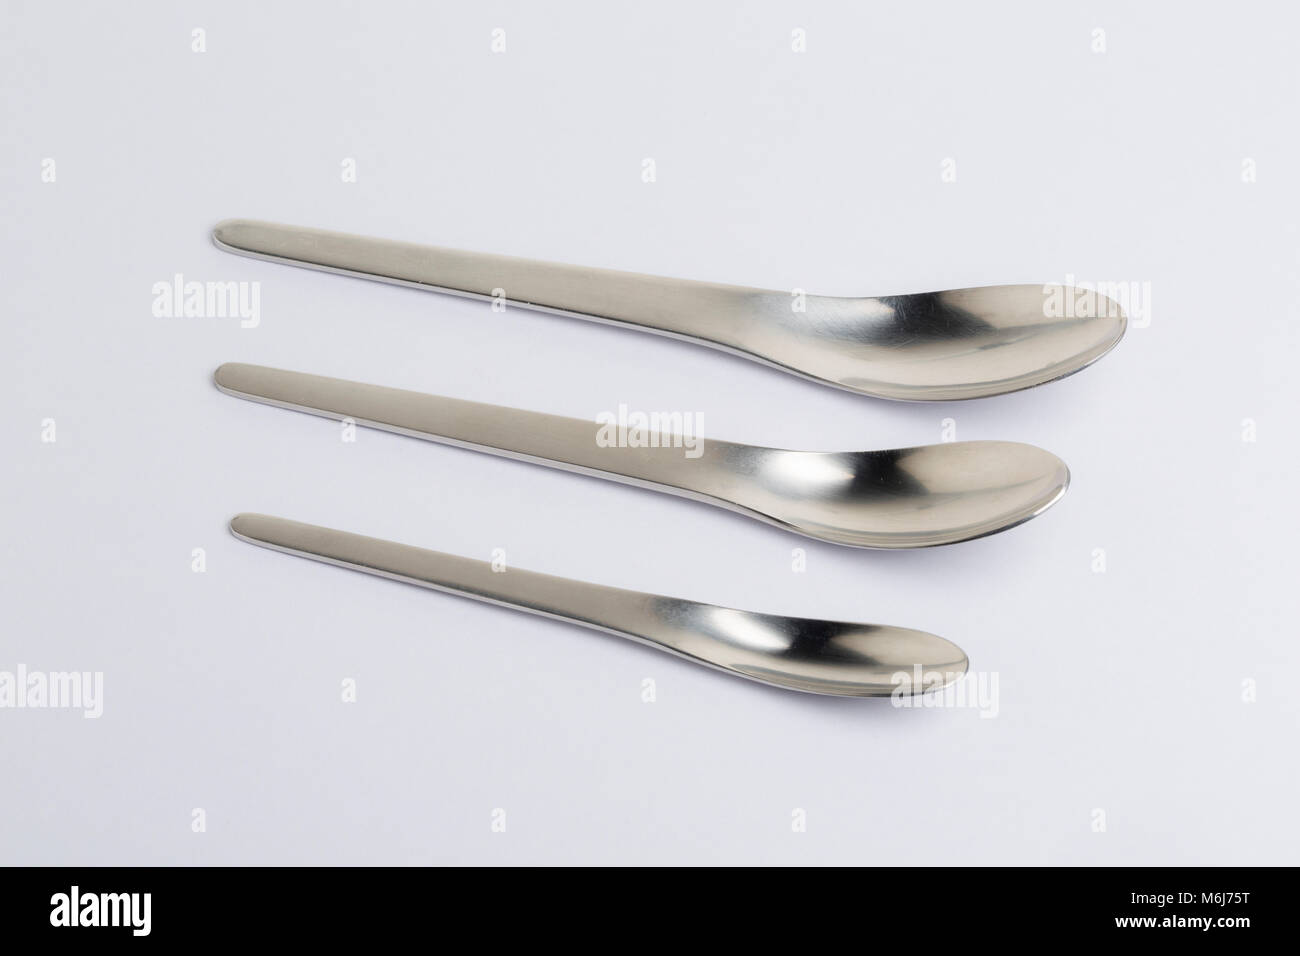 "AJ' posate progettato da Arne Jacobsen e realizzato da A. Michelson, 1957.tre dimensioni dei cucchiai. Foto Stock